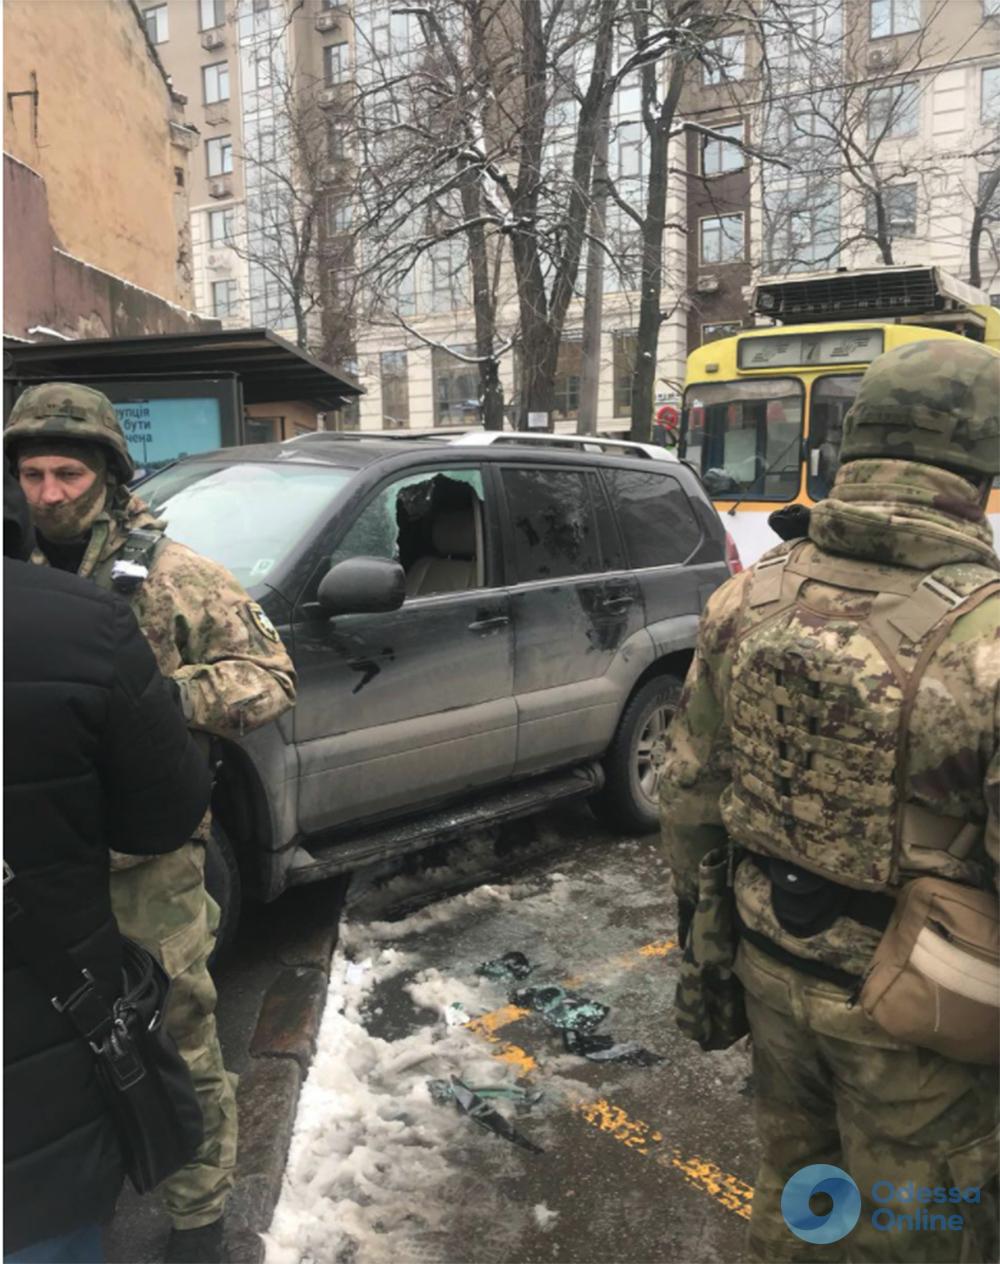 Одесса: полиция со «спецэффектами» задержала наркоторговцев